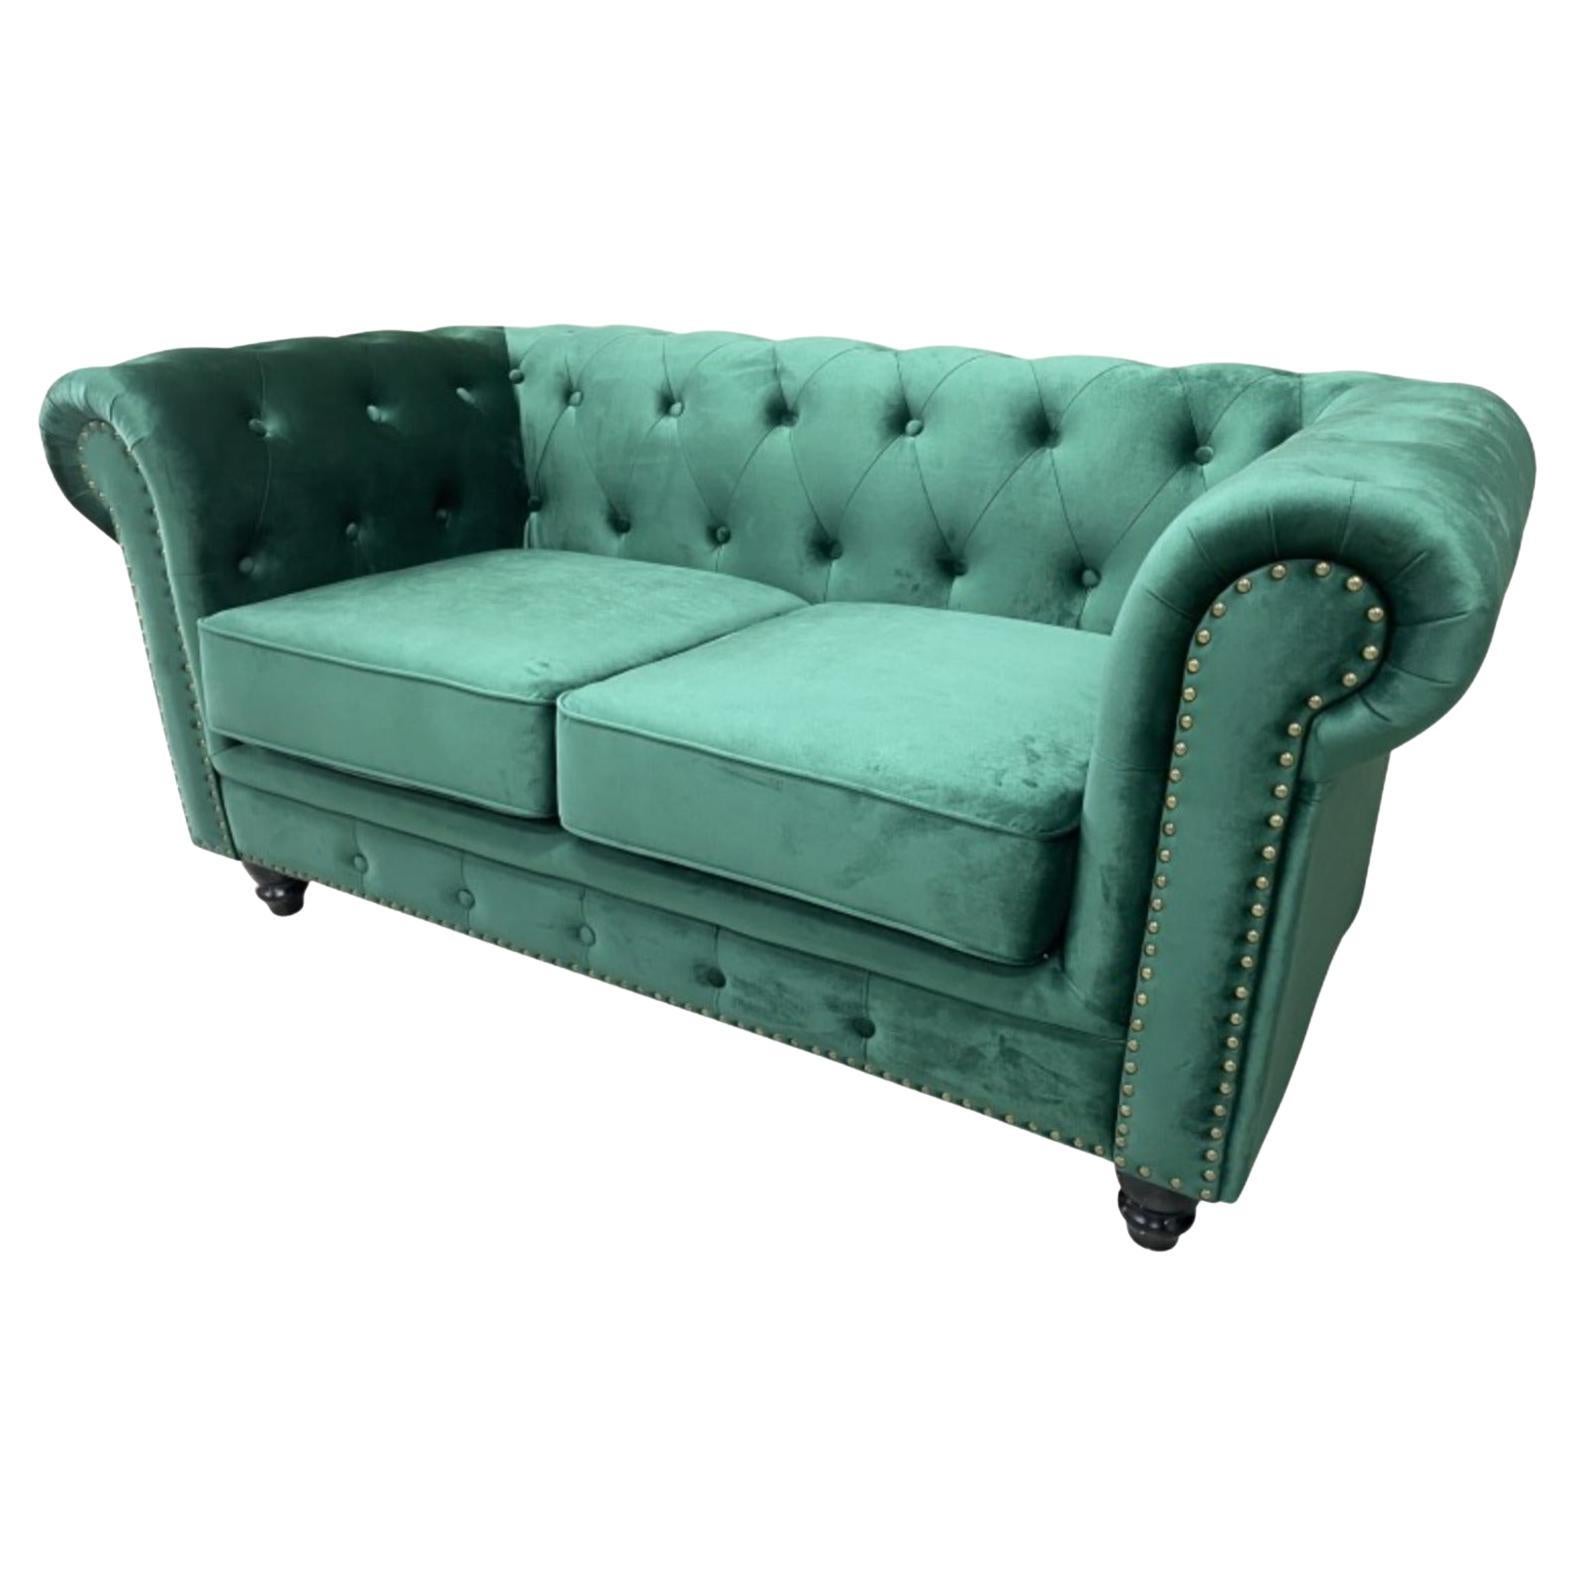 New Chester Premium 2 Seater Sofa, Green Velvet Upholstery